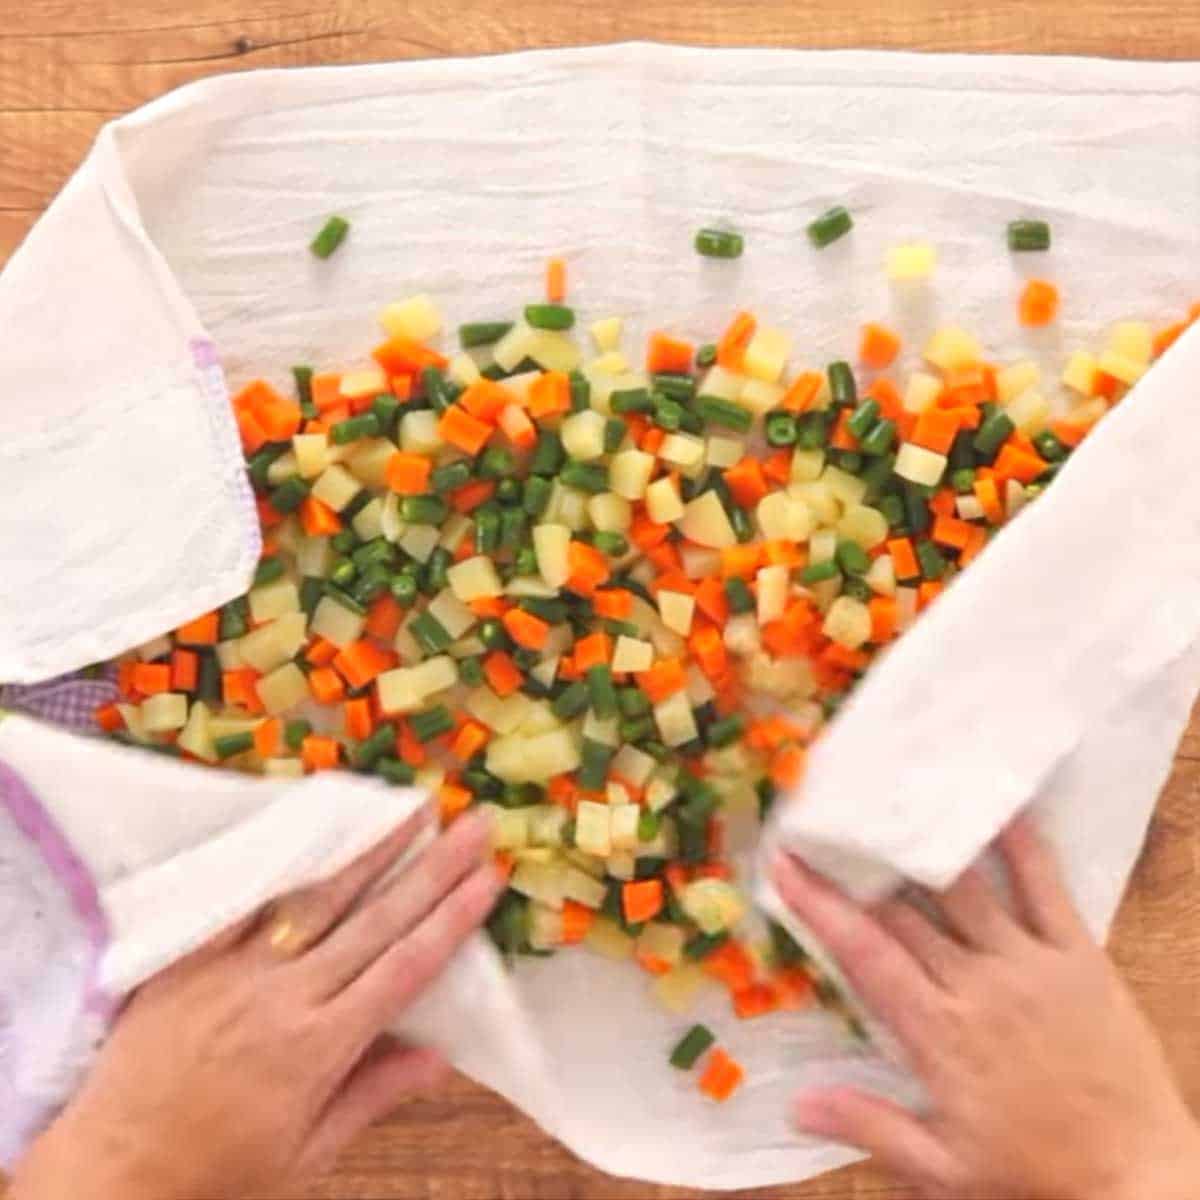 secando os legumes